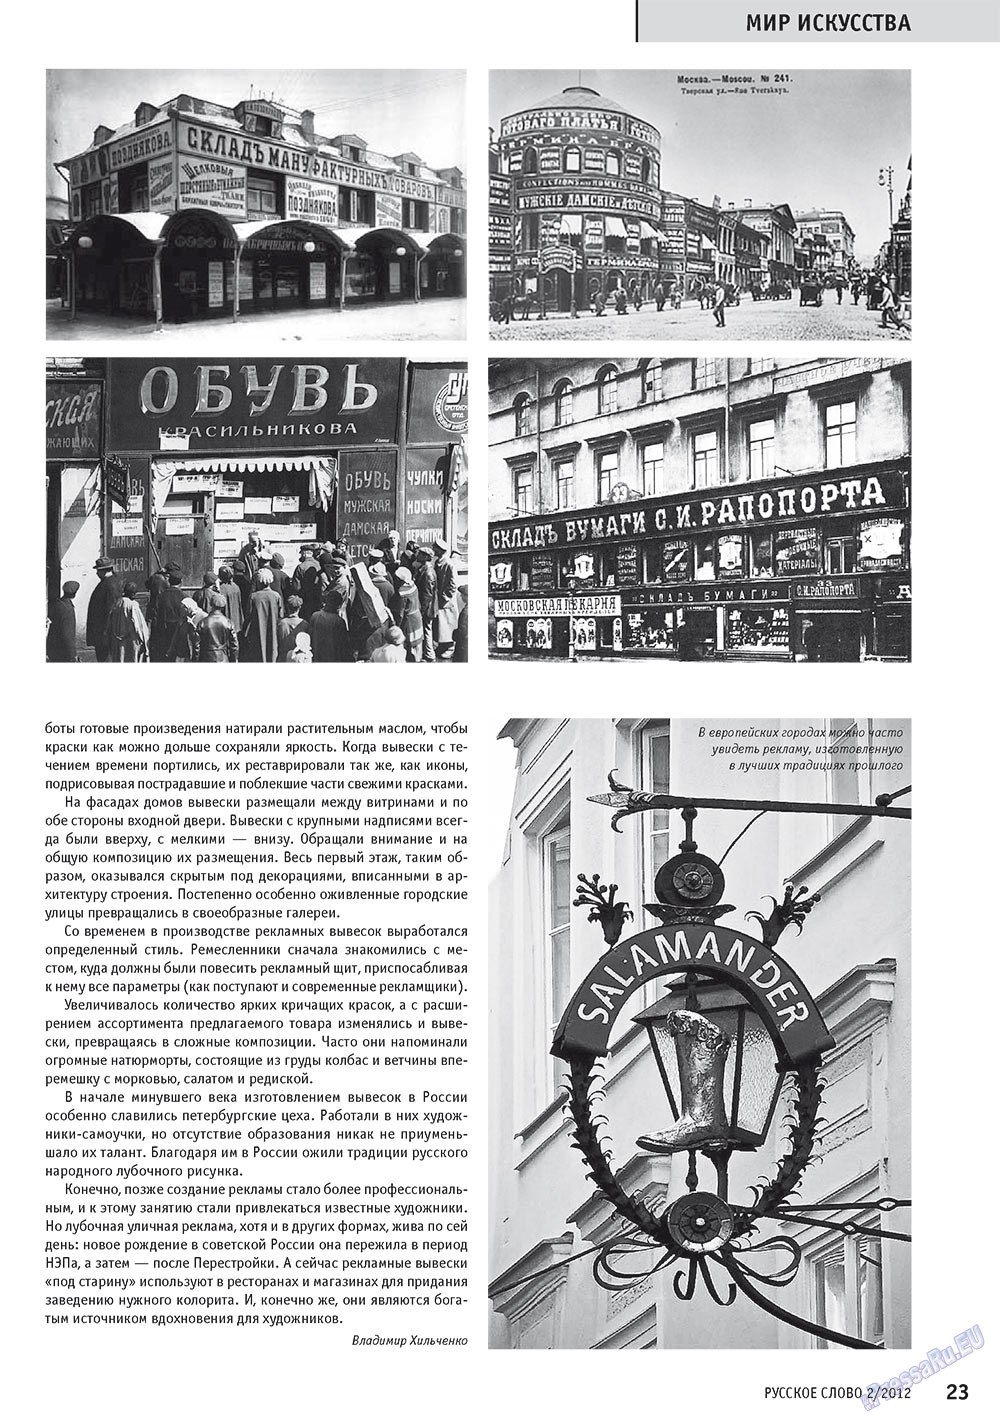 Русское слово, журнал. 2012 №2 стр.25